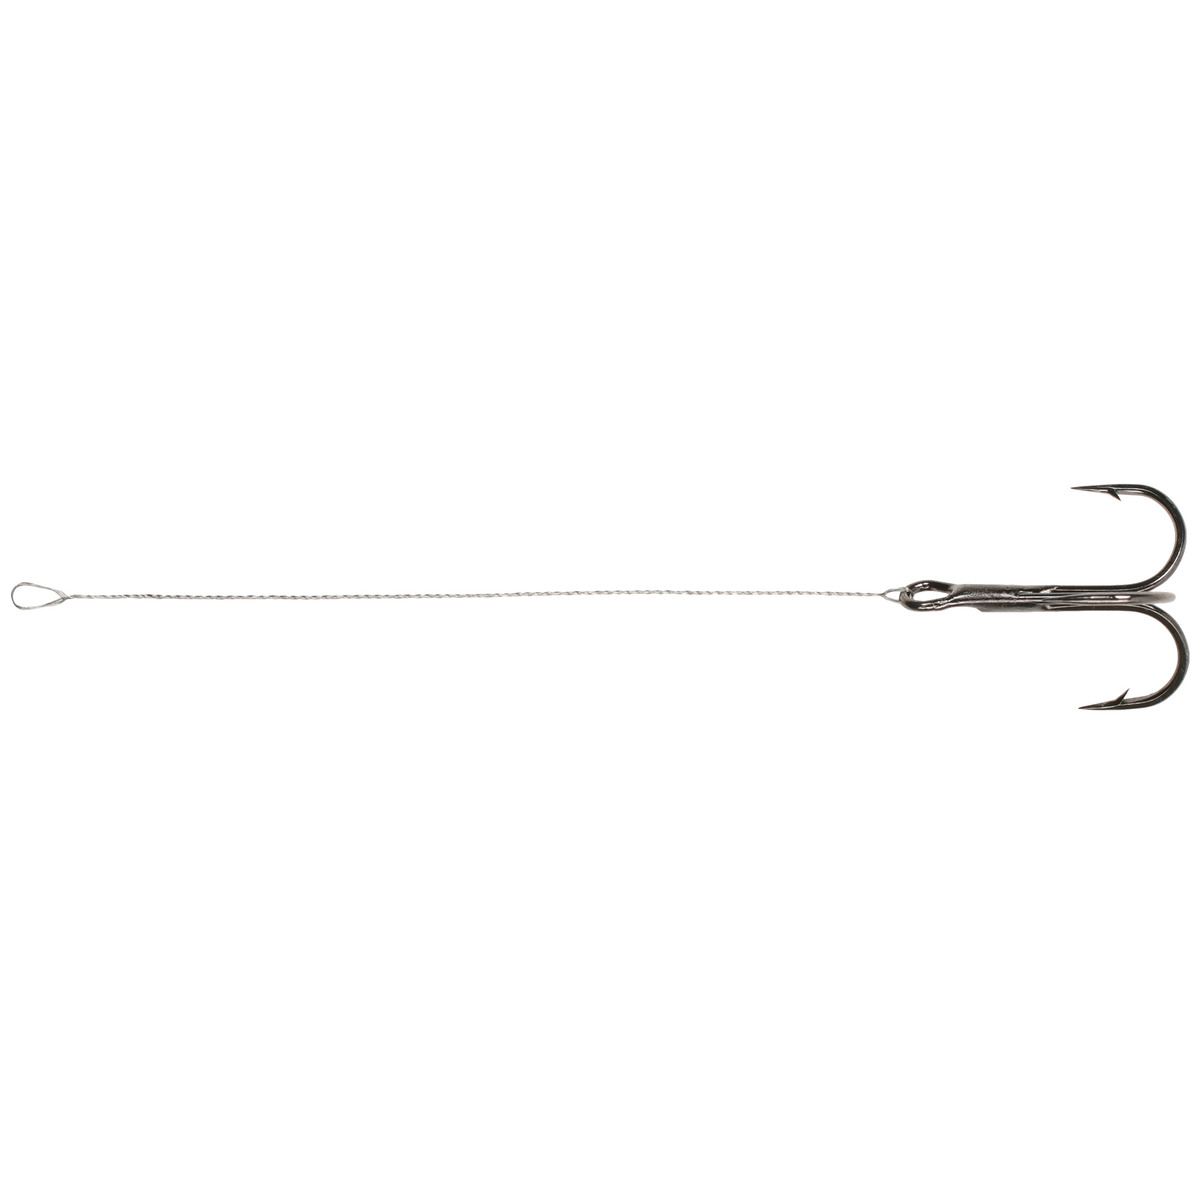 Mikado Ph Steel - 13 cmx14kg  treble hook: 1 / 0